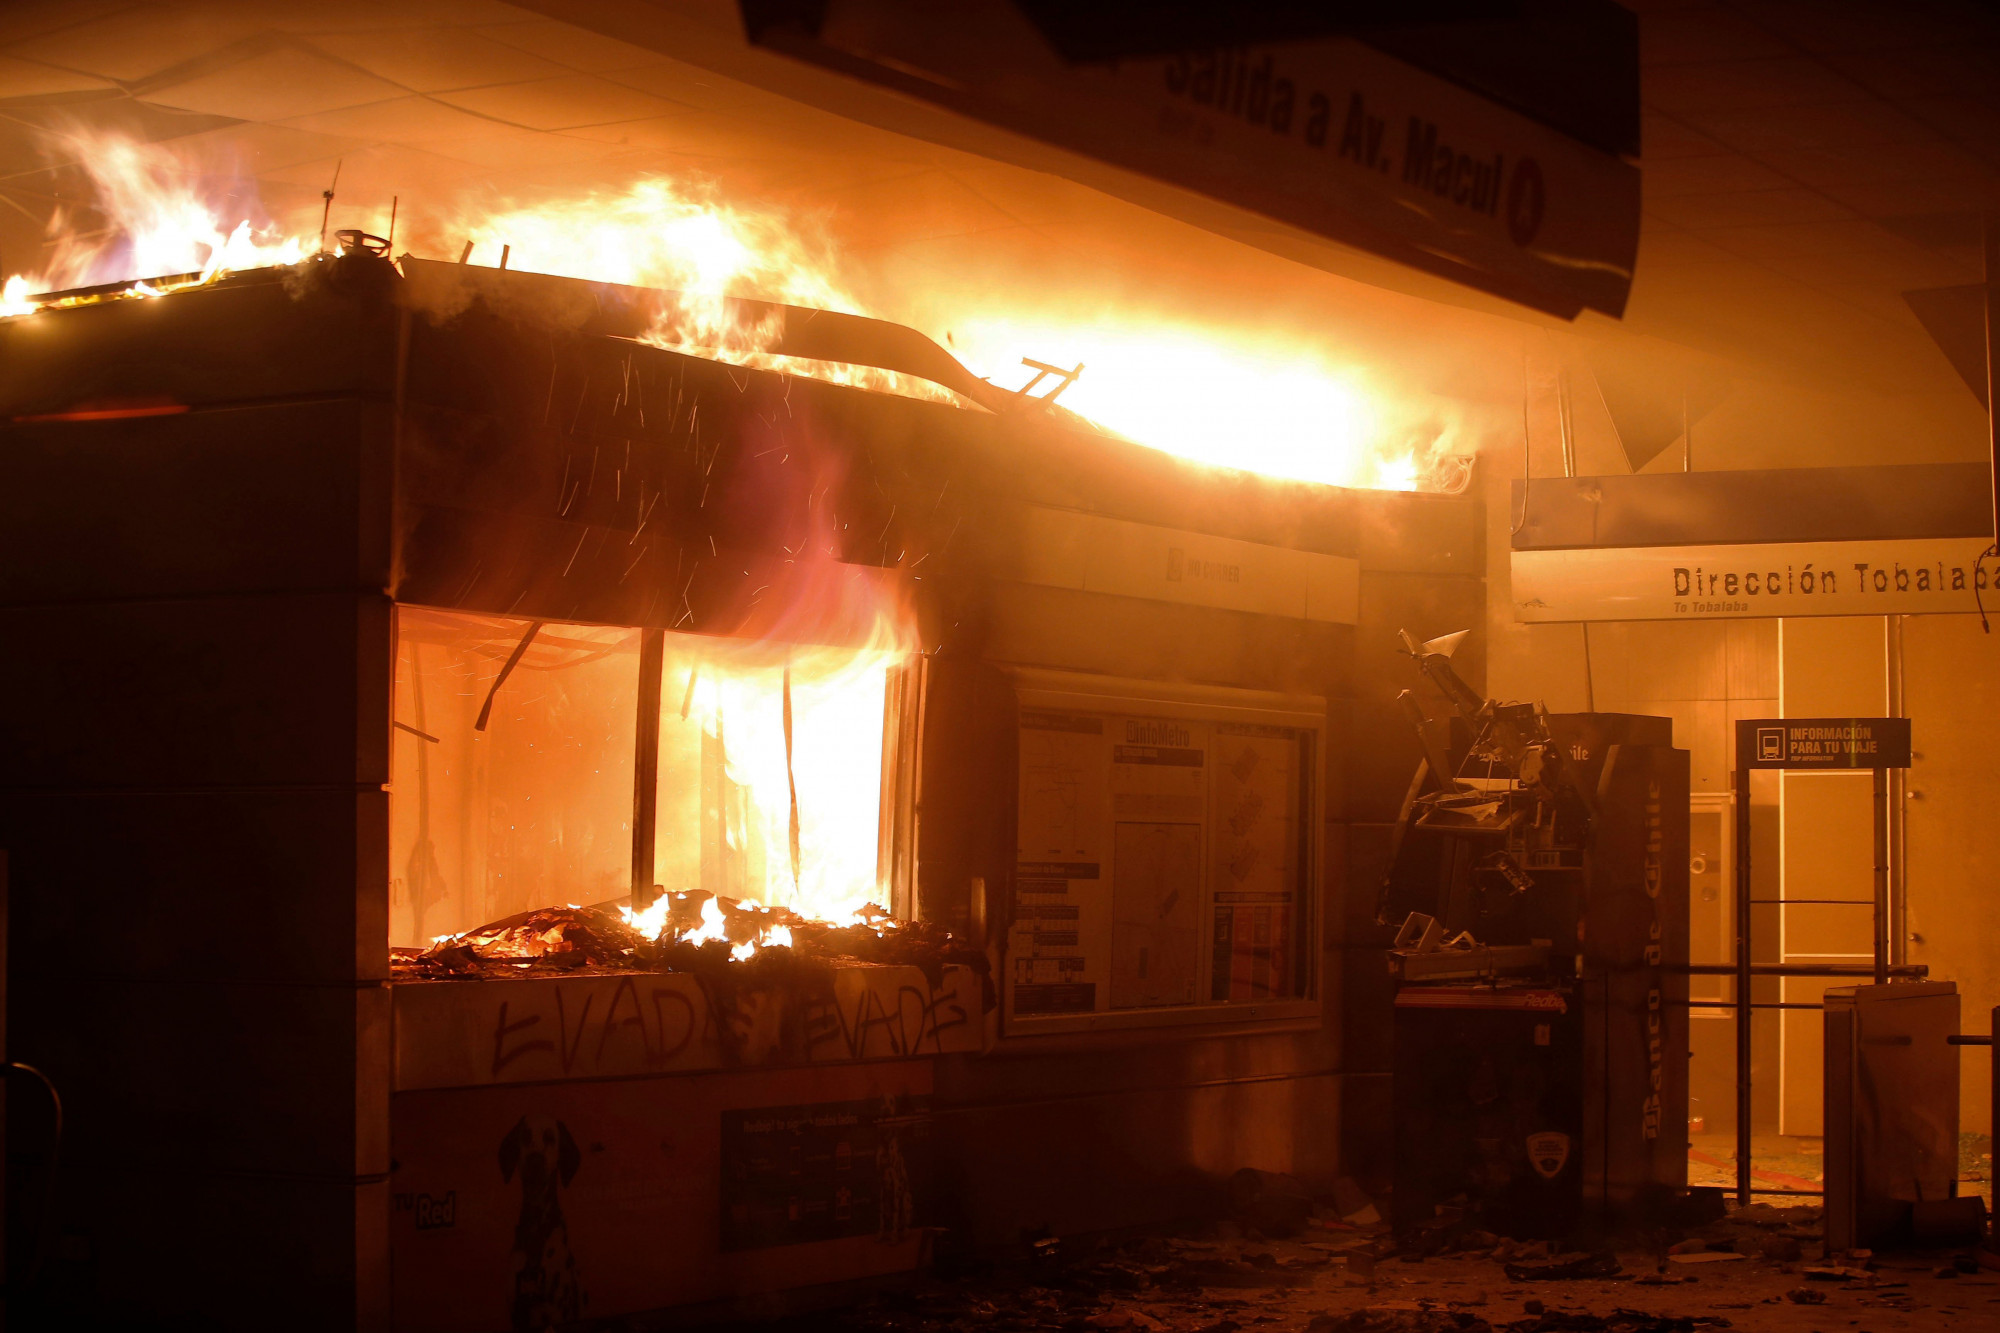  Vista da estação de metrô Macul incendiada por manifestantes durante um protesto em massa de evasão de tarifas em Santiago, em 19 de outubro de 2019 (Javier Torres / AFP via Getty Images)